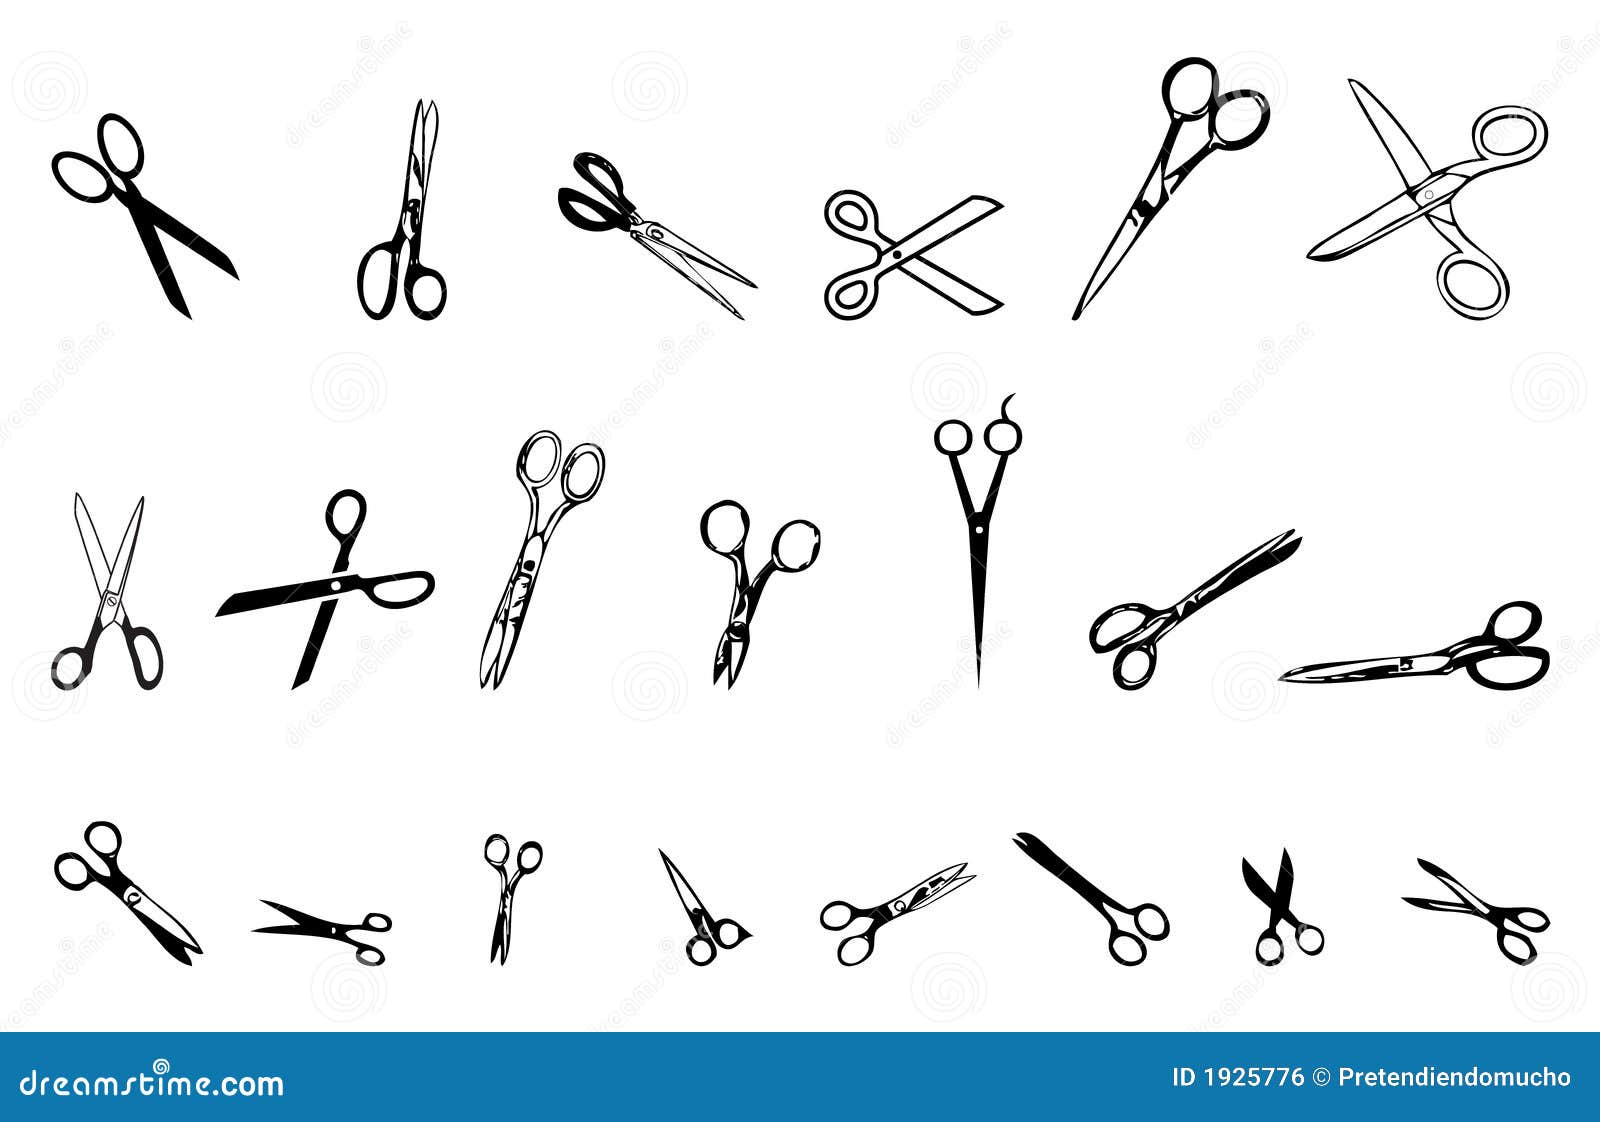 21 scissors